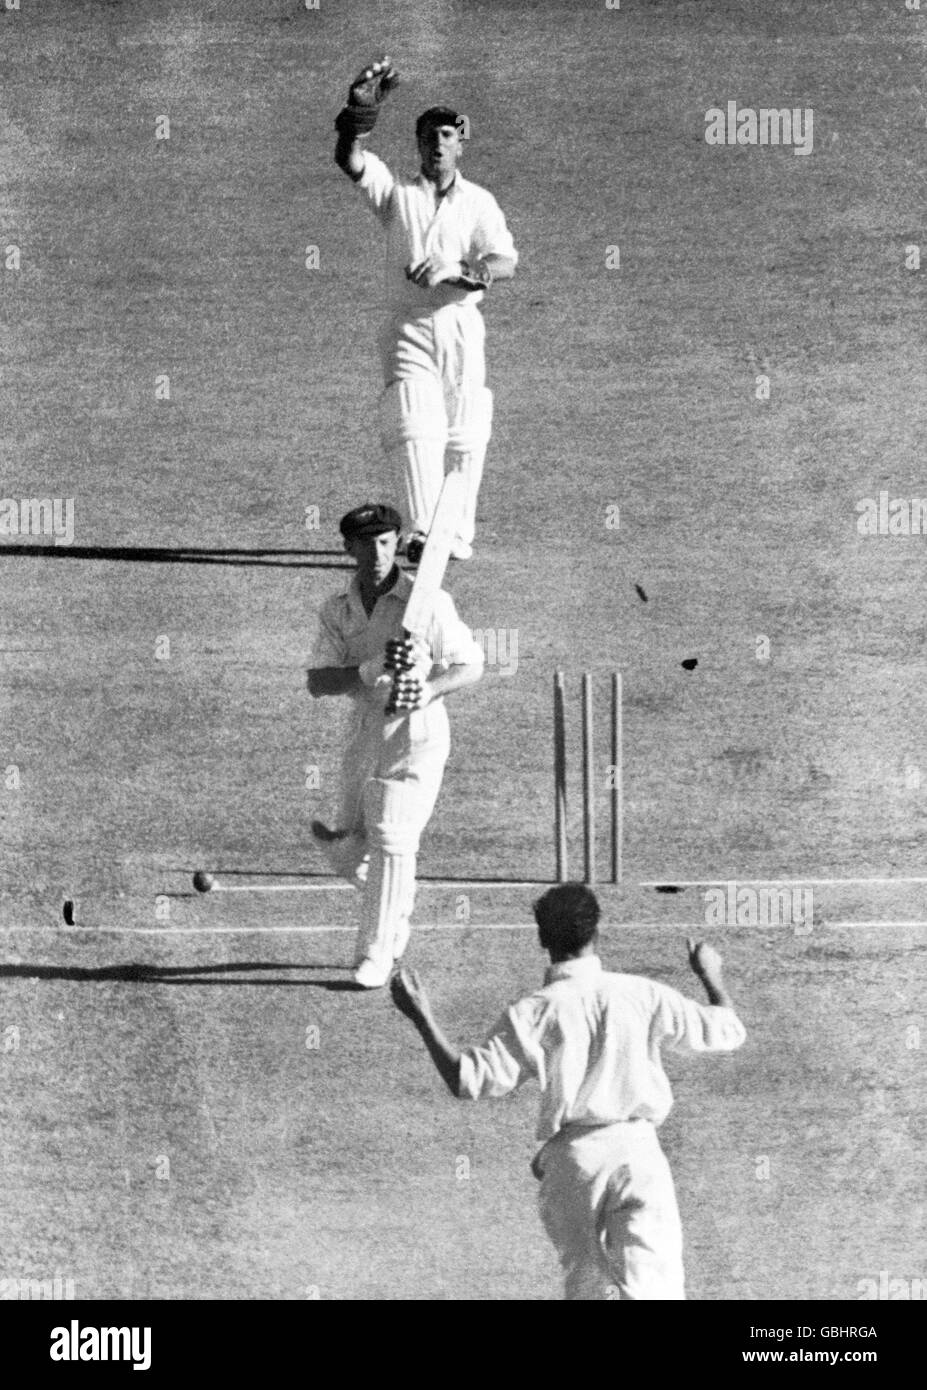 Cricket - The Ashes - Zweiter Test - Australien gegen England - erster Tag. Der australische Lindsay Hassett (c) wird von dem englischen Trevor Bailey (unten) sauber gewirbelt, wie der Wicketkeeper Godfrey Evans (oben) feiert Stockfoto